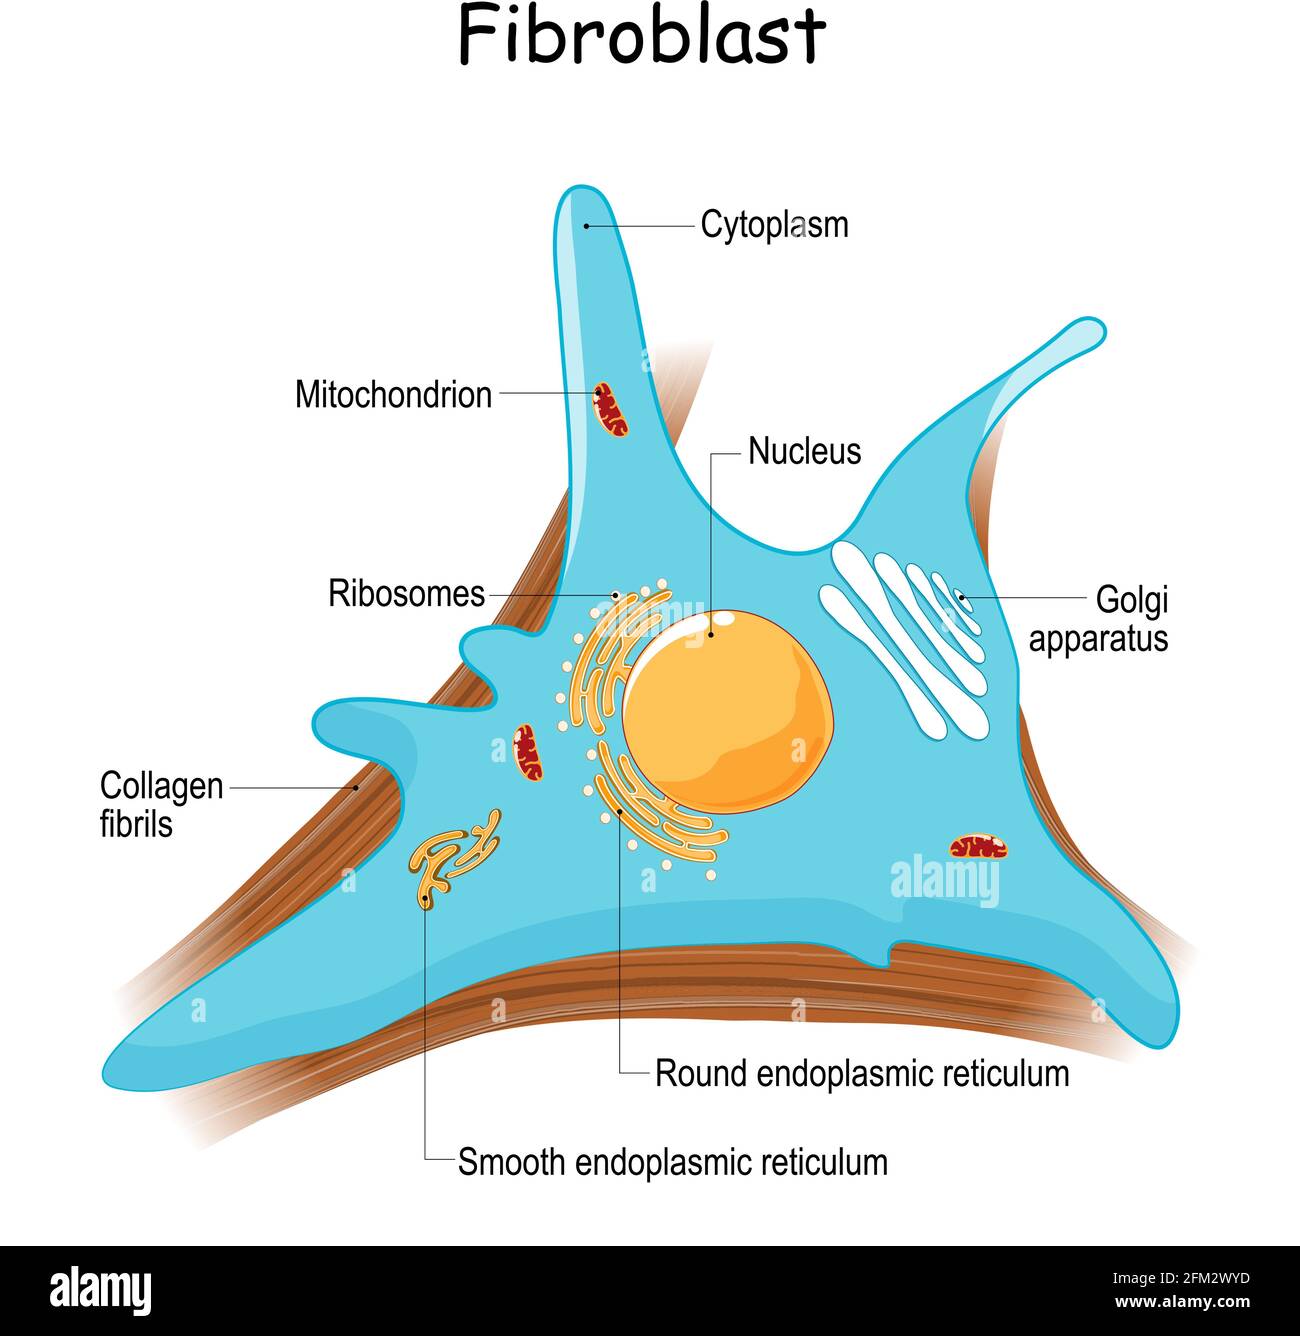 anatomie des fibroblastes. gros plan avec des fibrilles de collagène et des organelles. Diagramme avec appareil de golgi, noyau, mitochondries et ribosomes. Vecteur Illustration de Vecteur